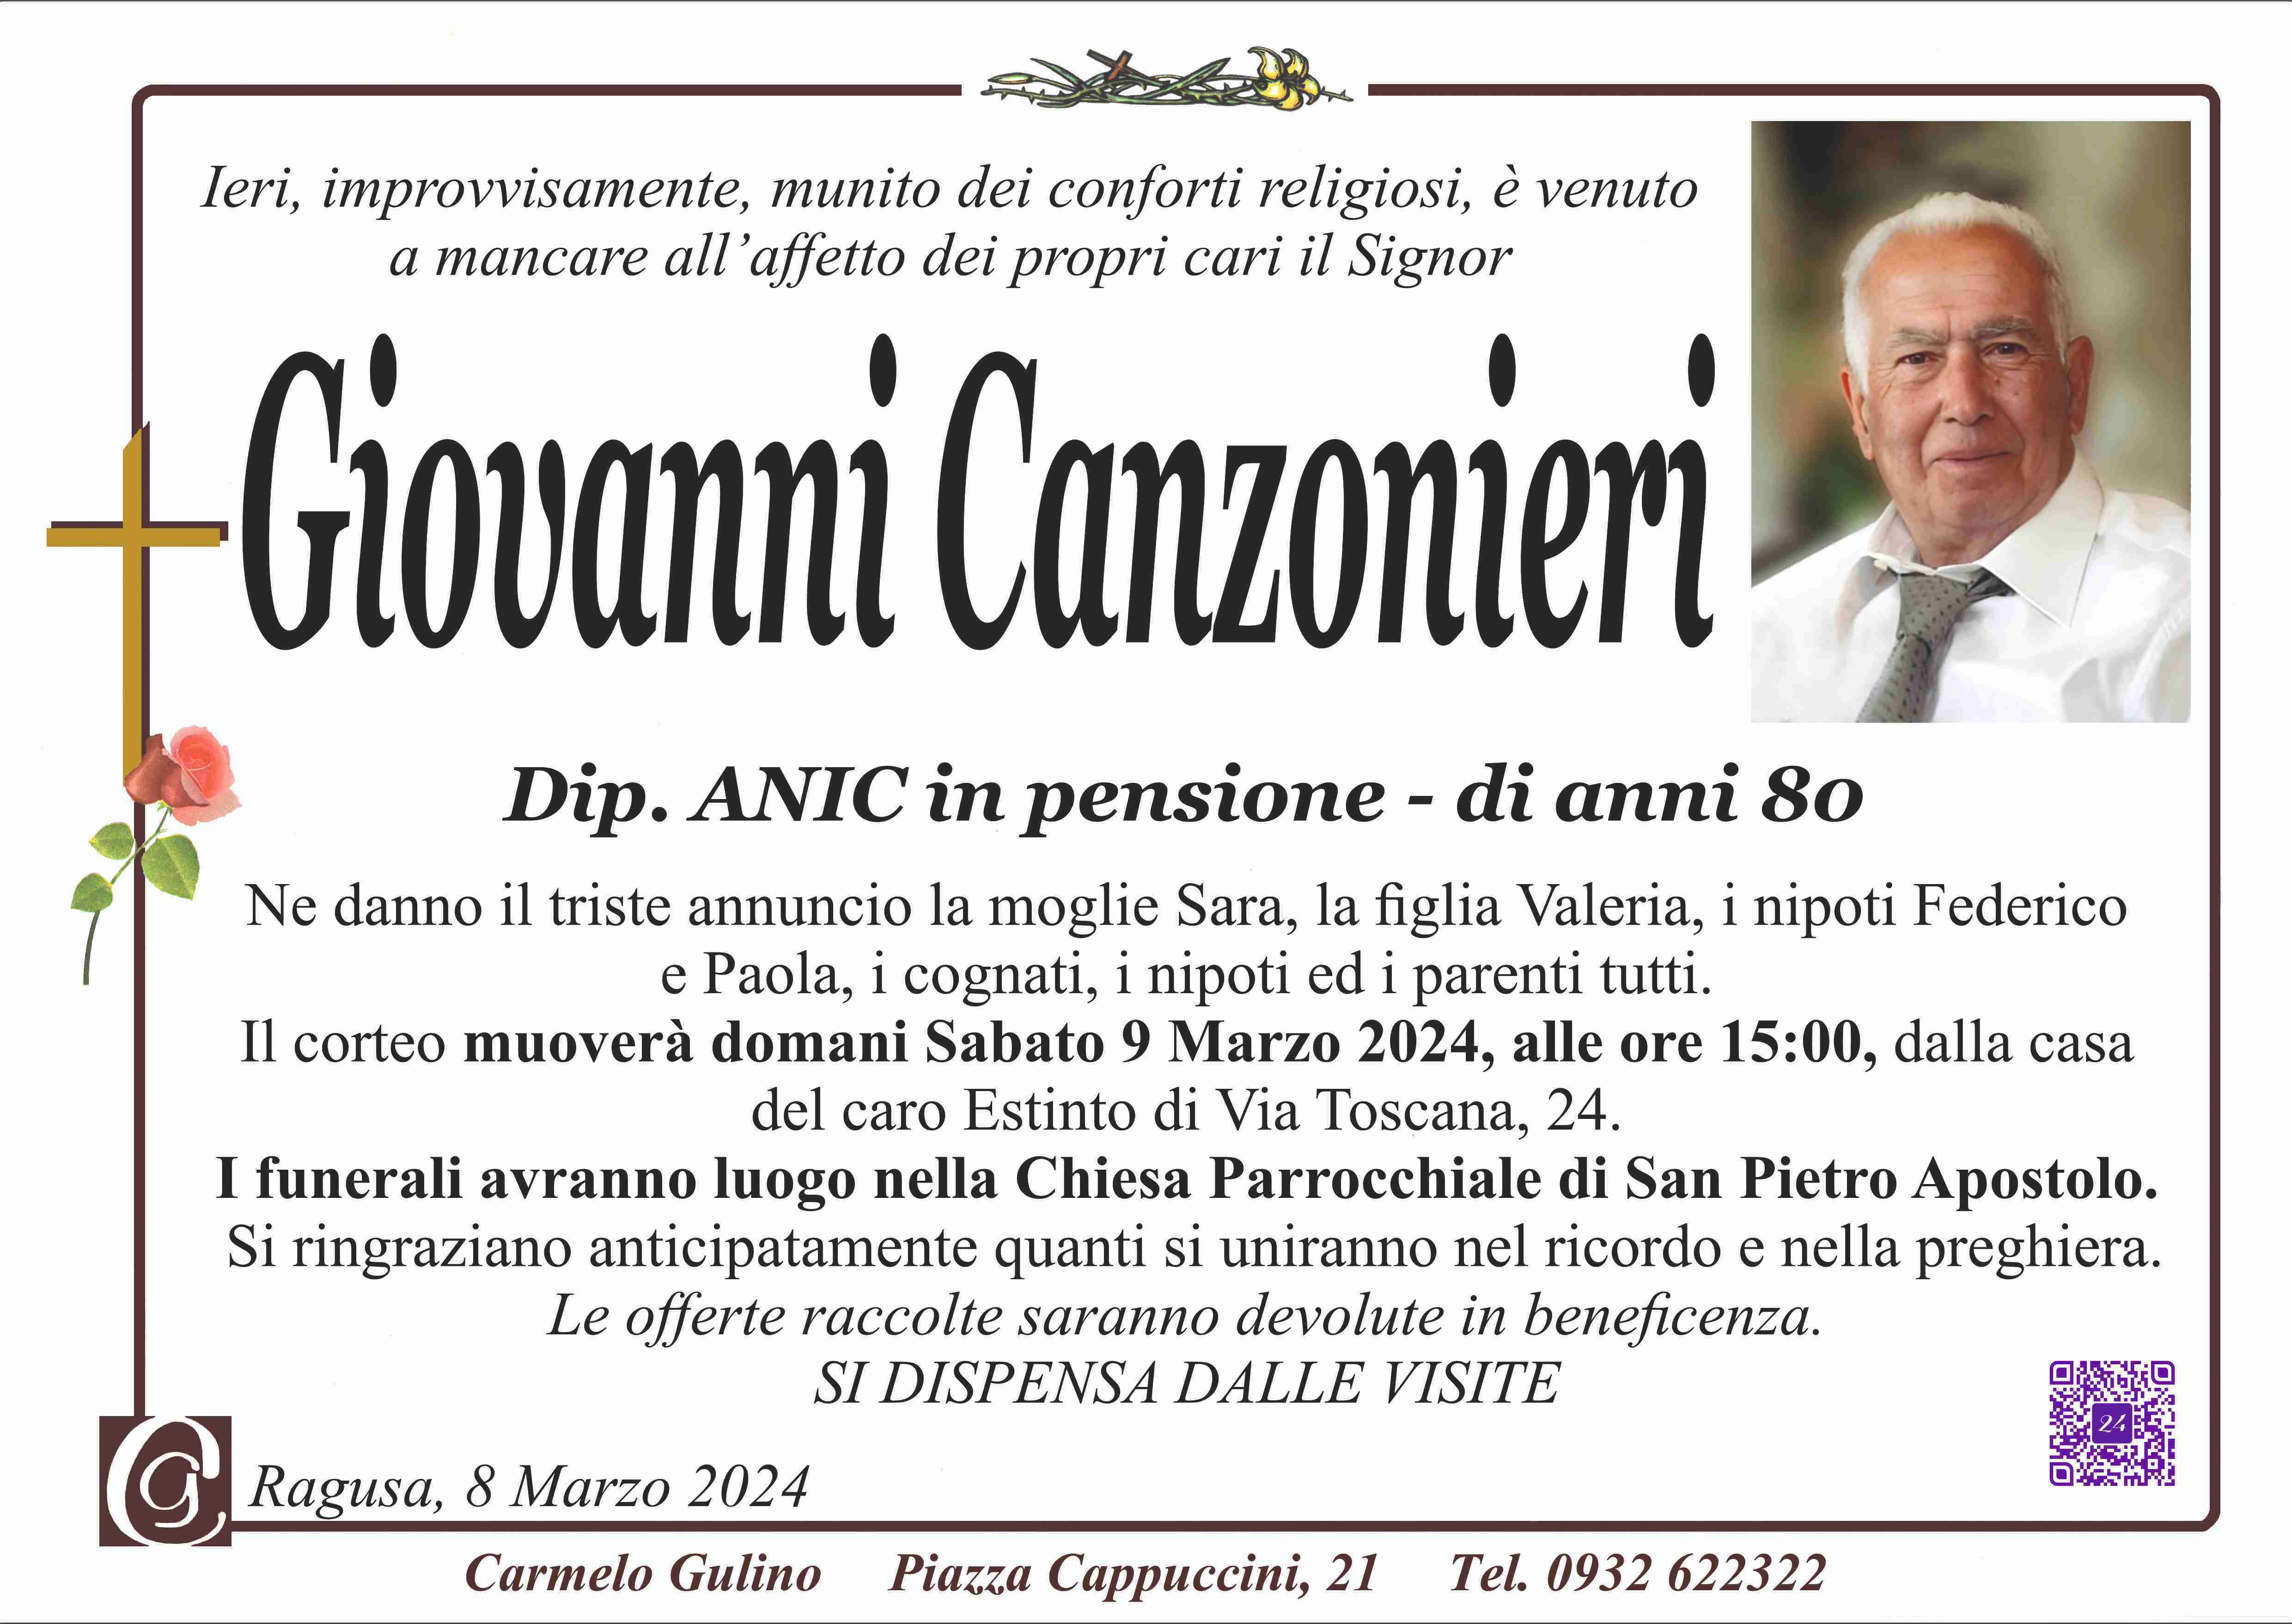 Giovanni Canzonieri